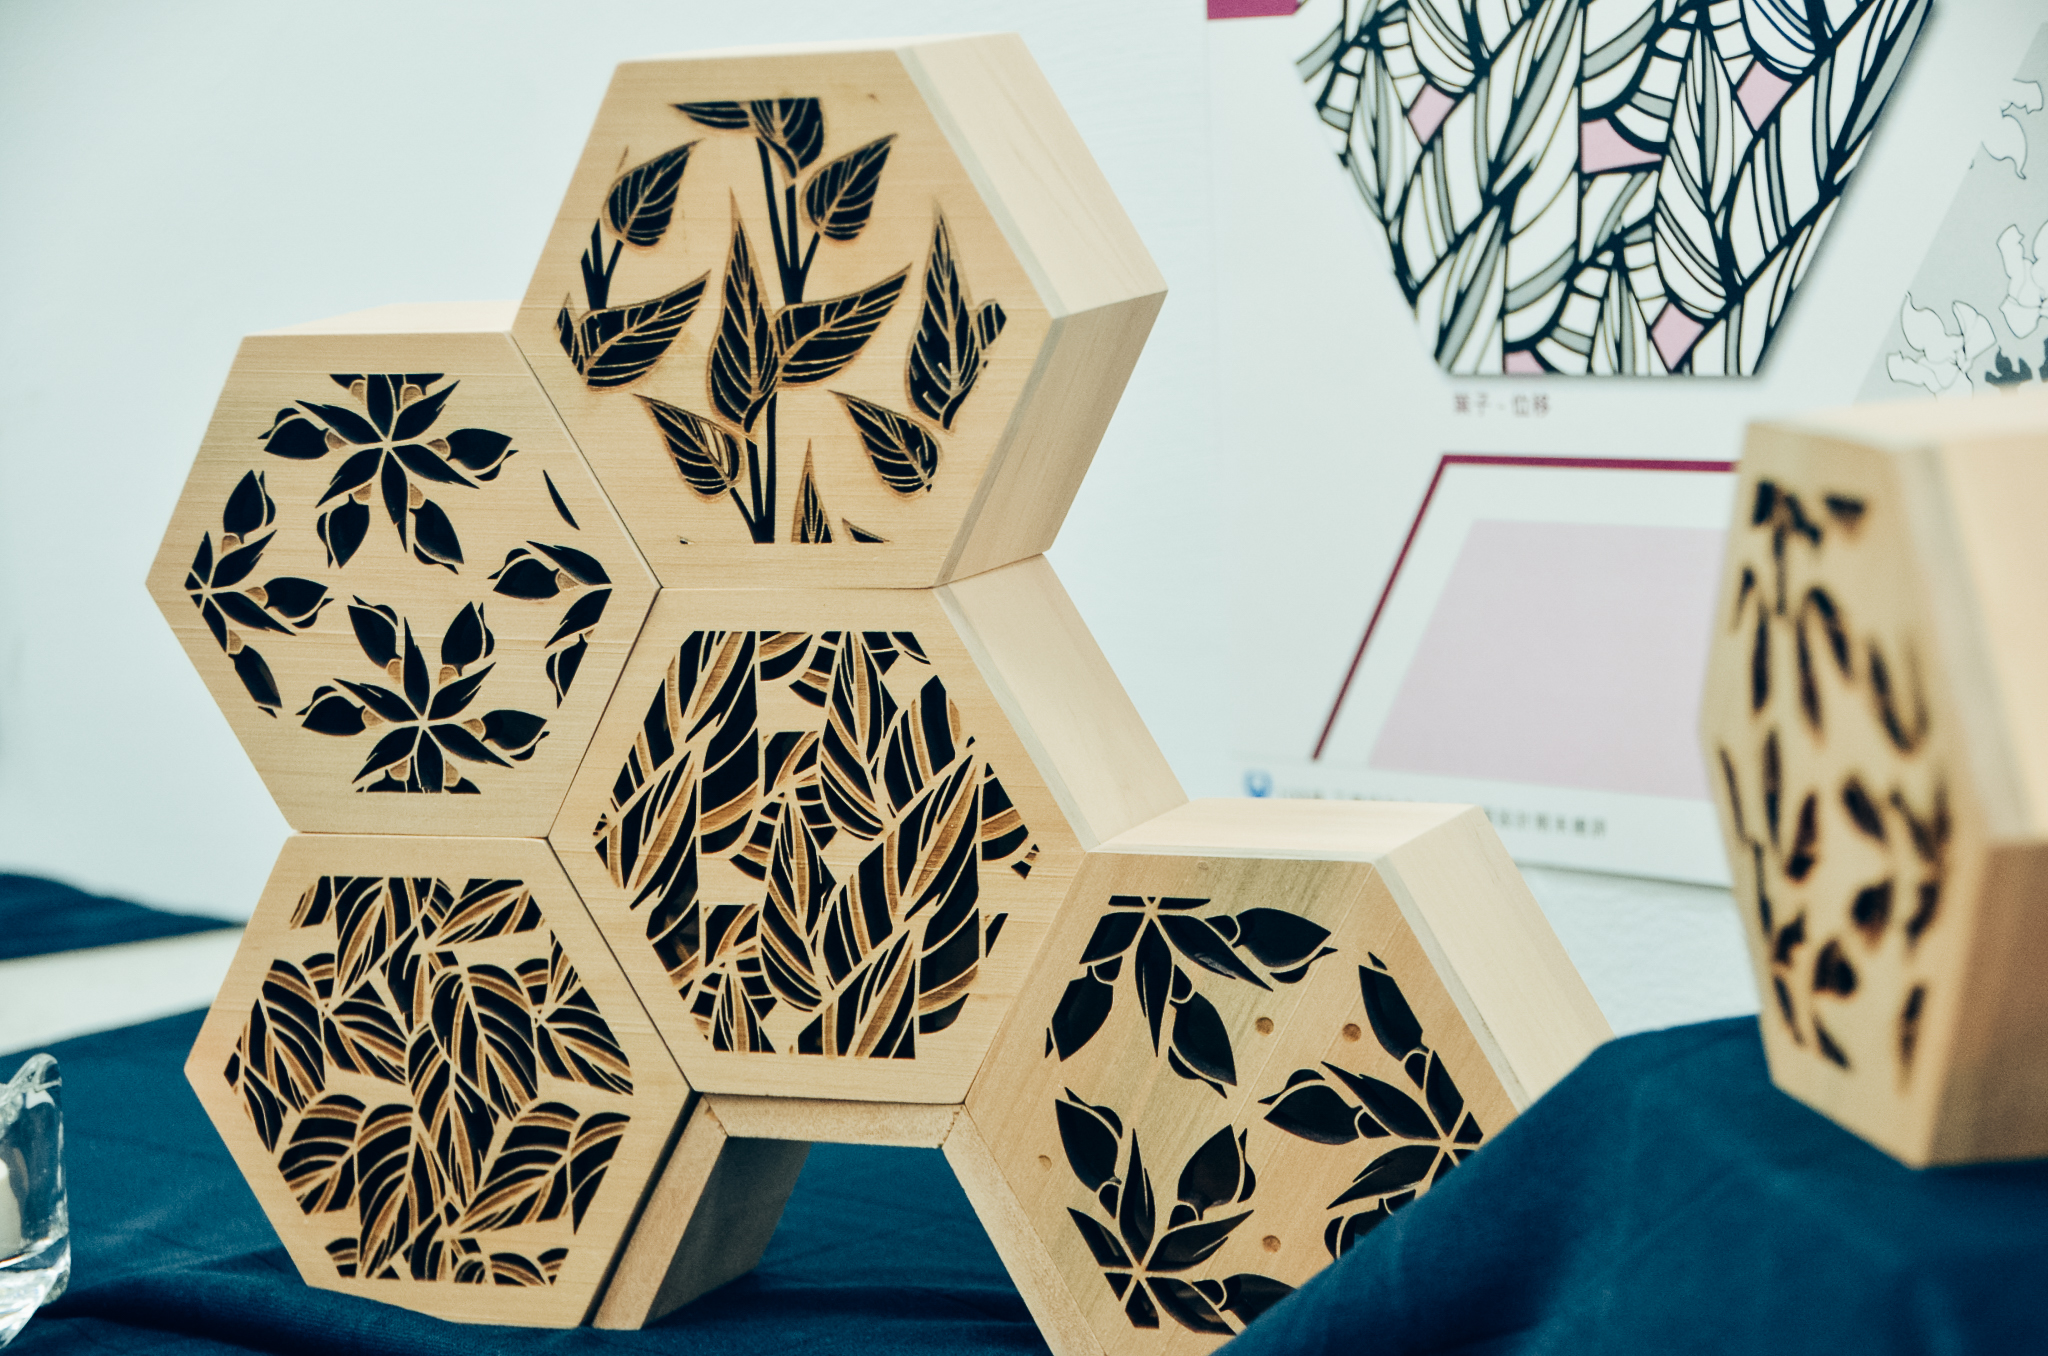 《轉化》作品圖片，由六角形雷切花紋木盒組構而成